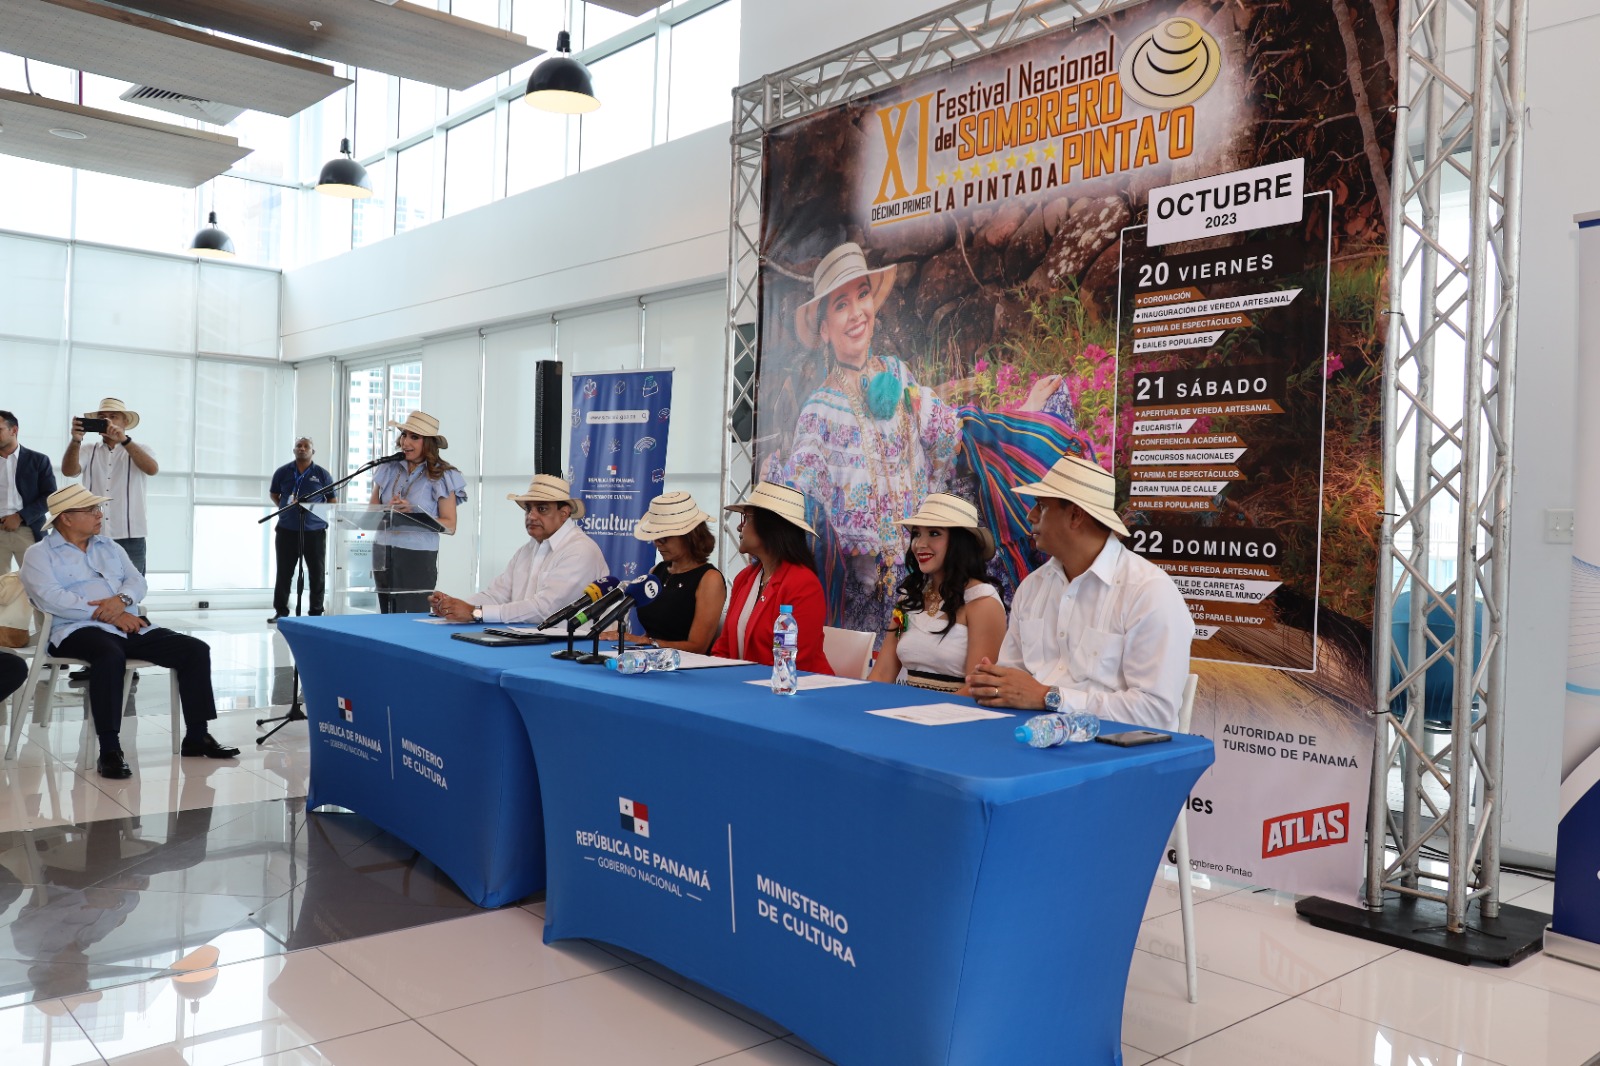 La Pintada recibirá a miles durante Festival Nacional del Sombrero Pintao